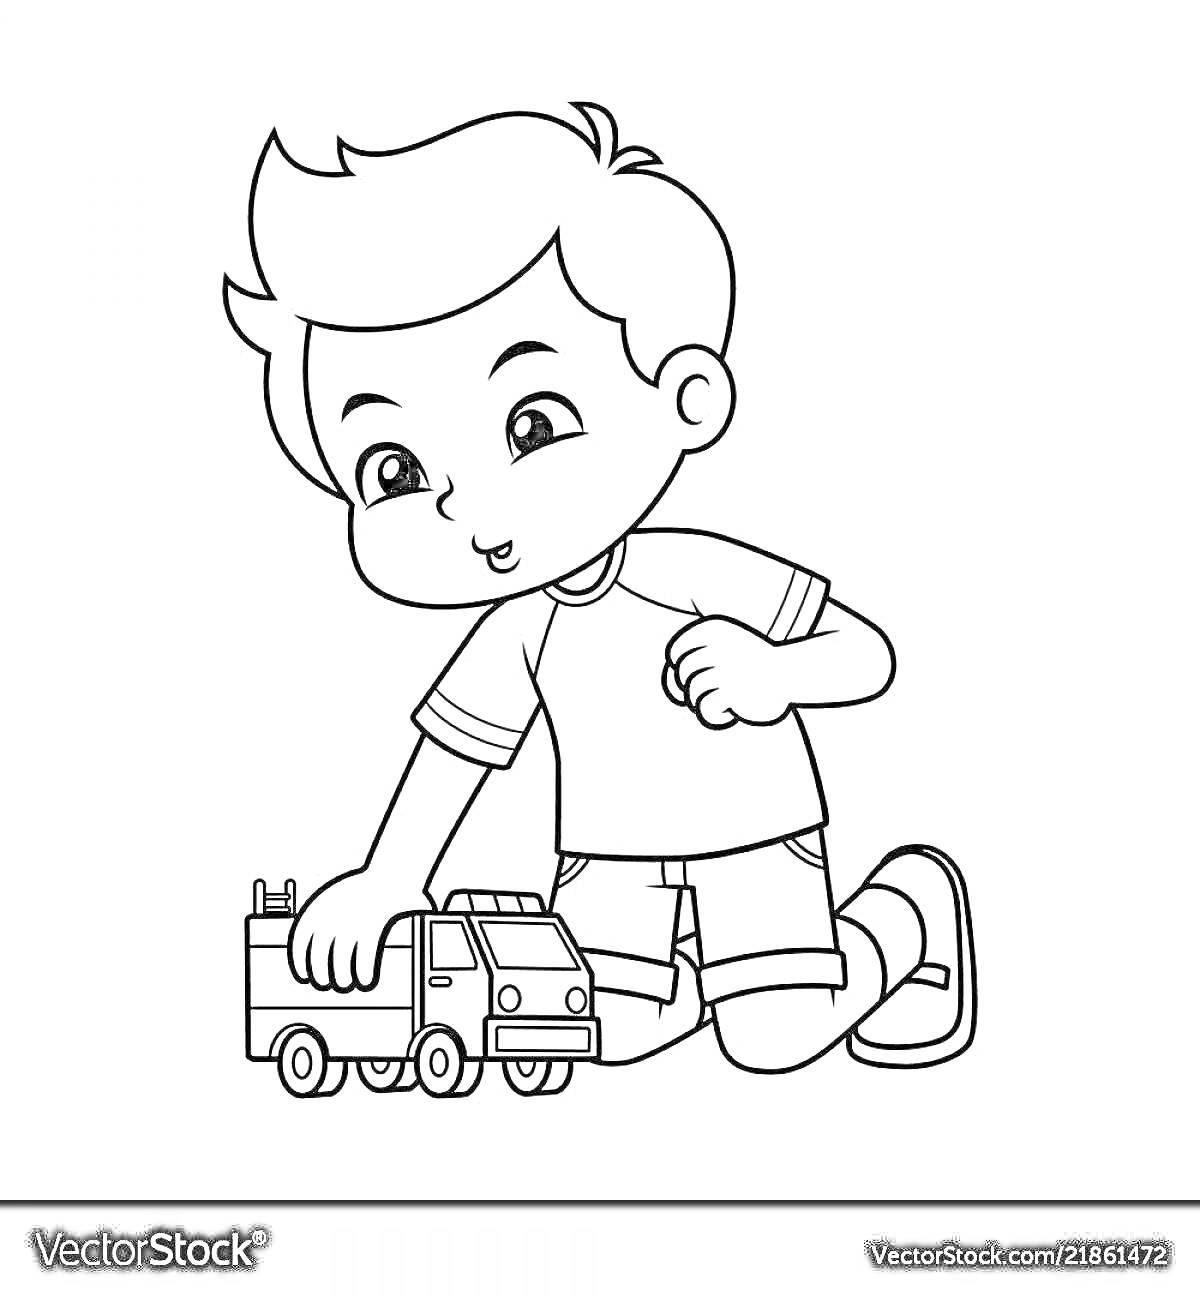 Раскраска мальчик играет с грузовиком, на коленях, короткие волосы, футболка с короткими рукавами, шорты, кроссовки